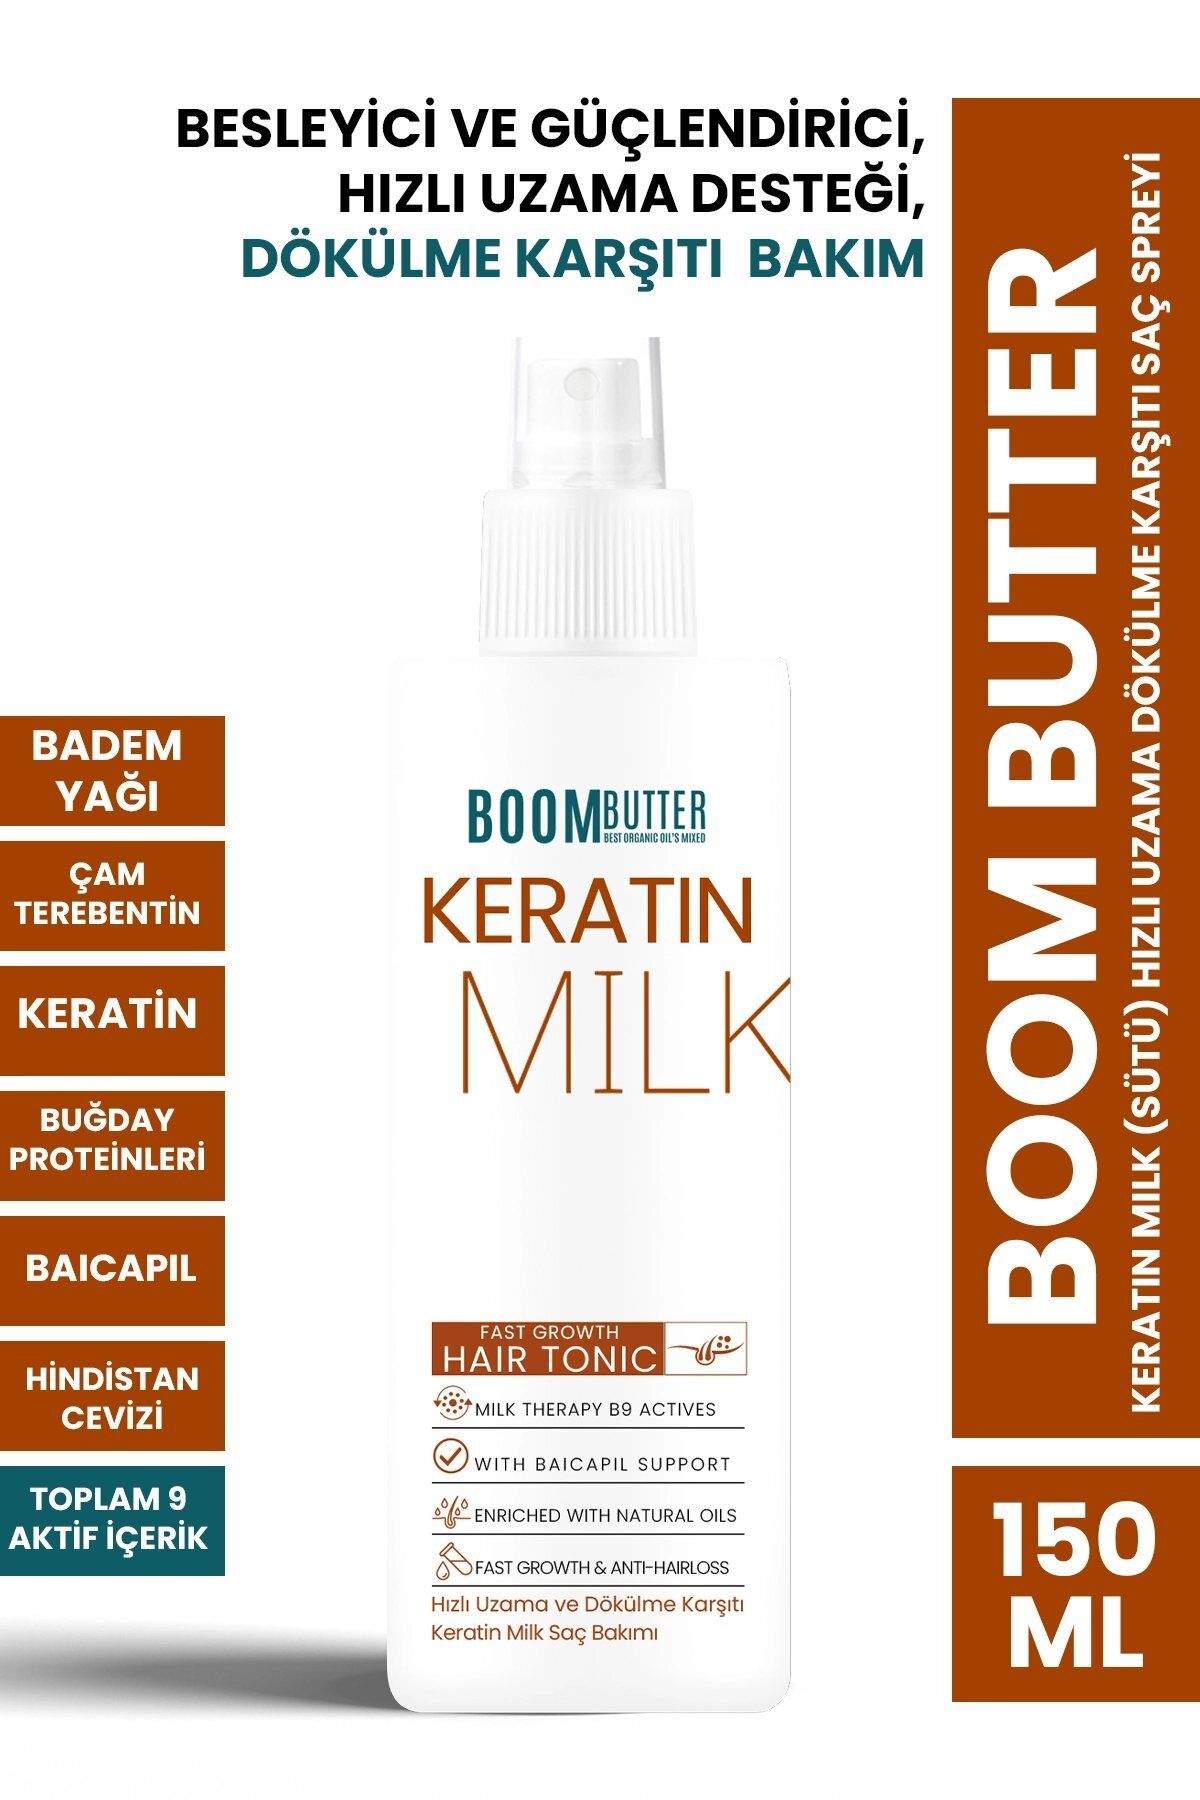 PROCSIN Boom Butter Keratin Milk (SÜTÜ) Hızlı Uzama Dökülme Karşıtı Saç Spreyi 150ml